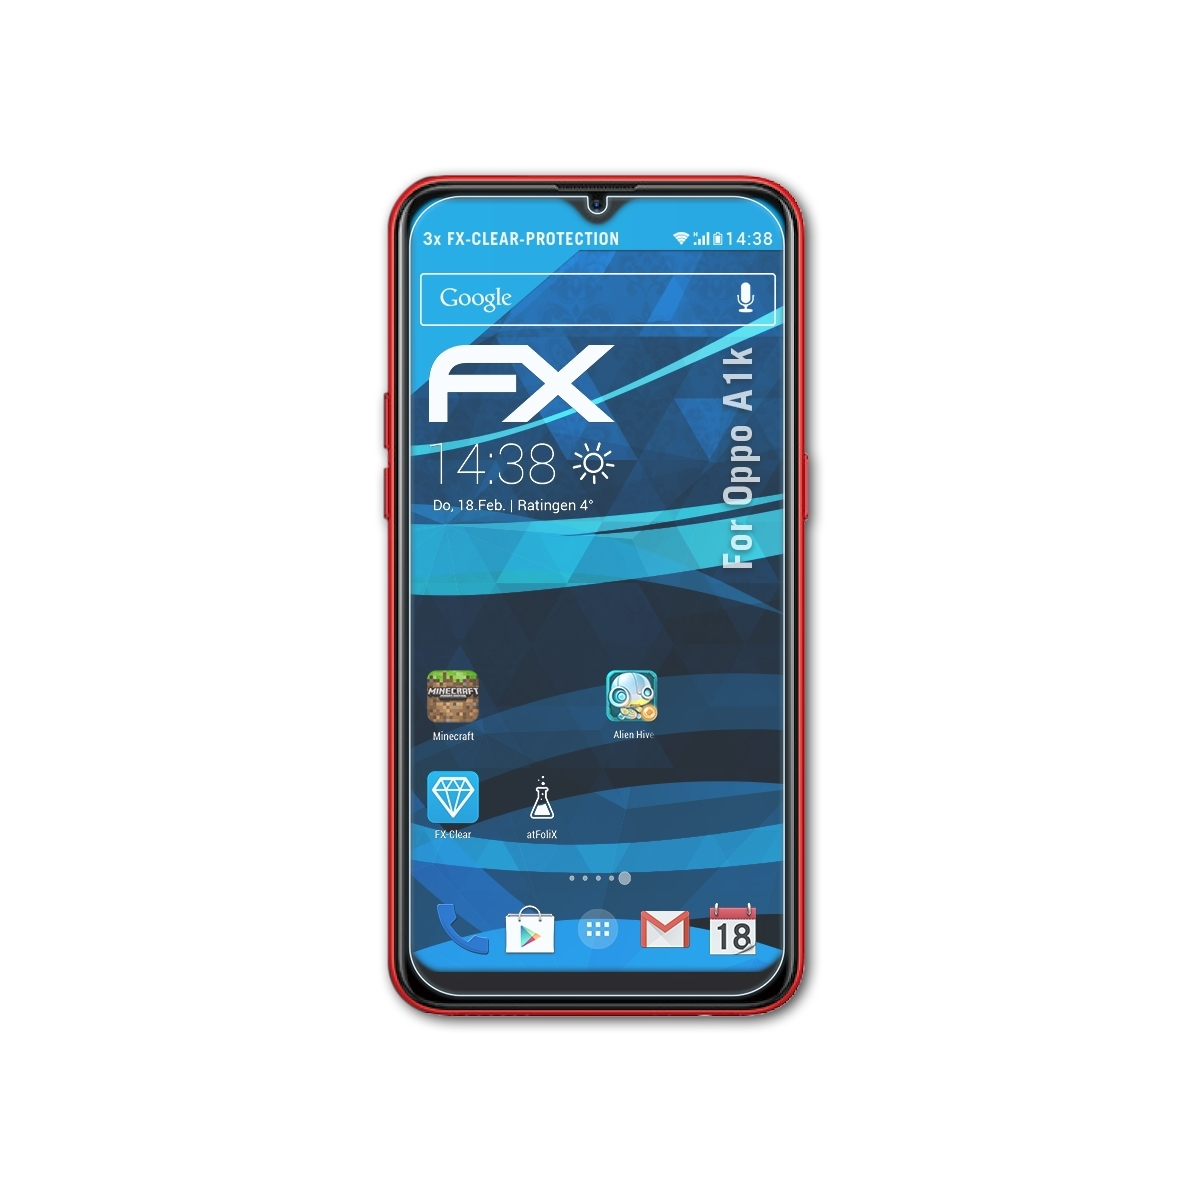 Displayschutz(für ATFOLIX A1k) 3x Oppo FX-Clear